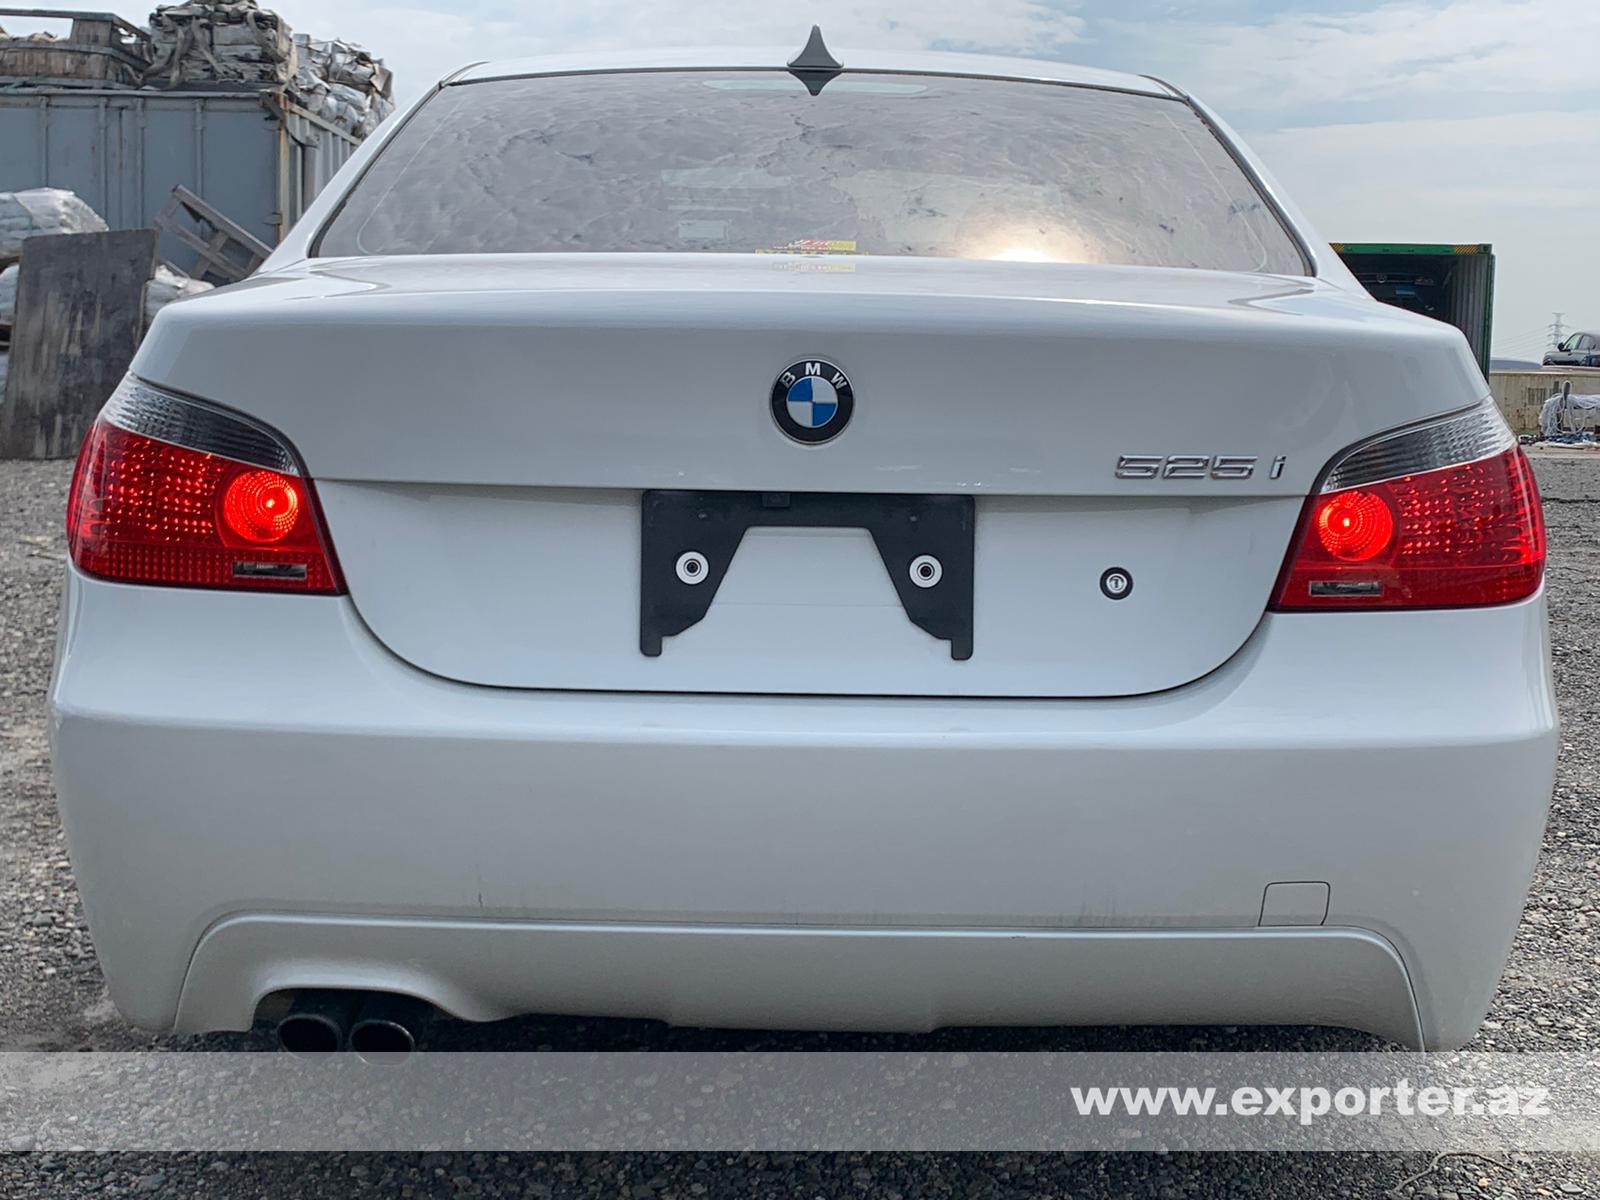 BMW 525i M Sport (photo: 1)